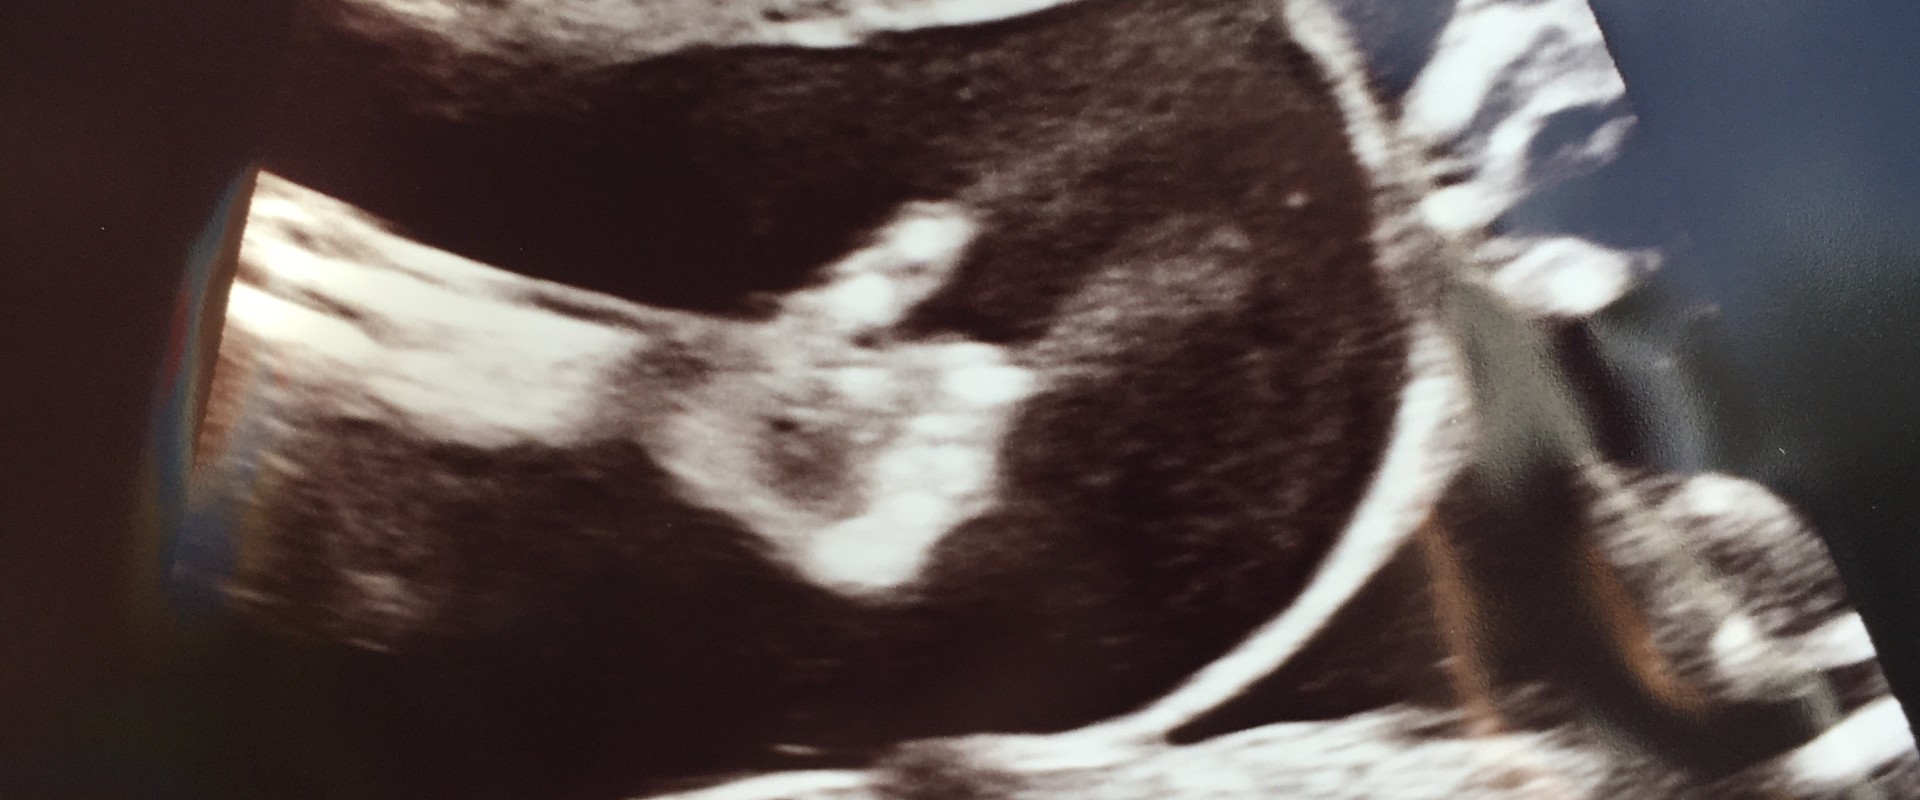 20 weken zwanger van onze tweeling, en alles gaat goed :-)